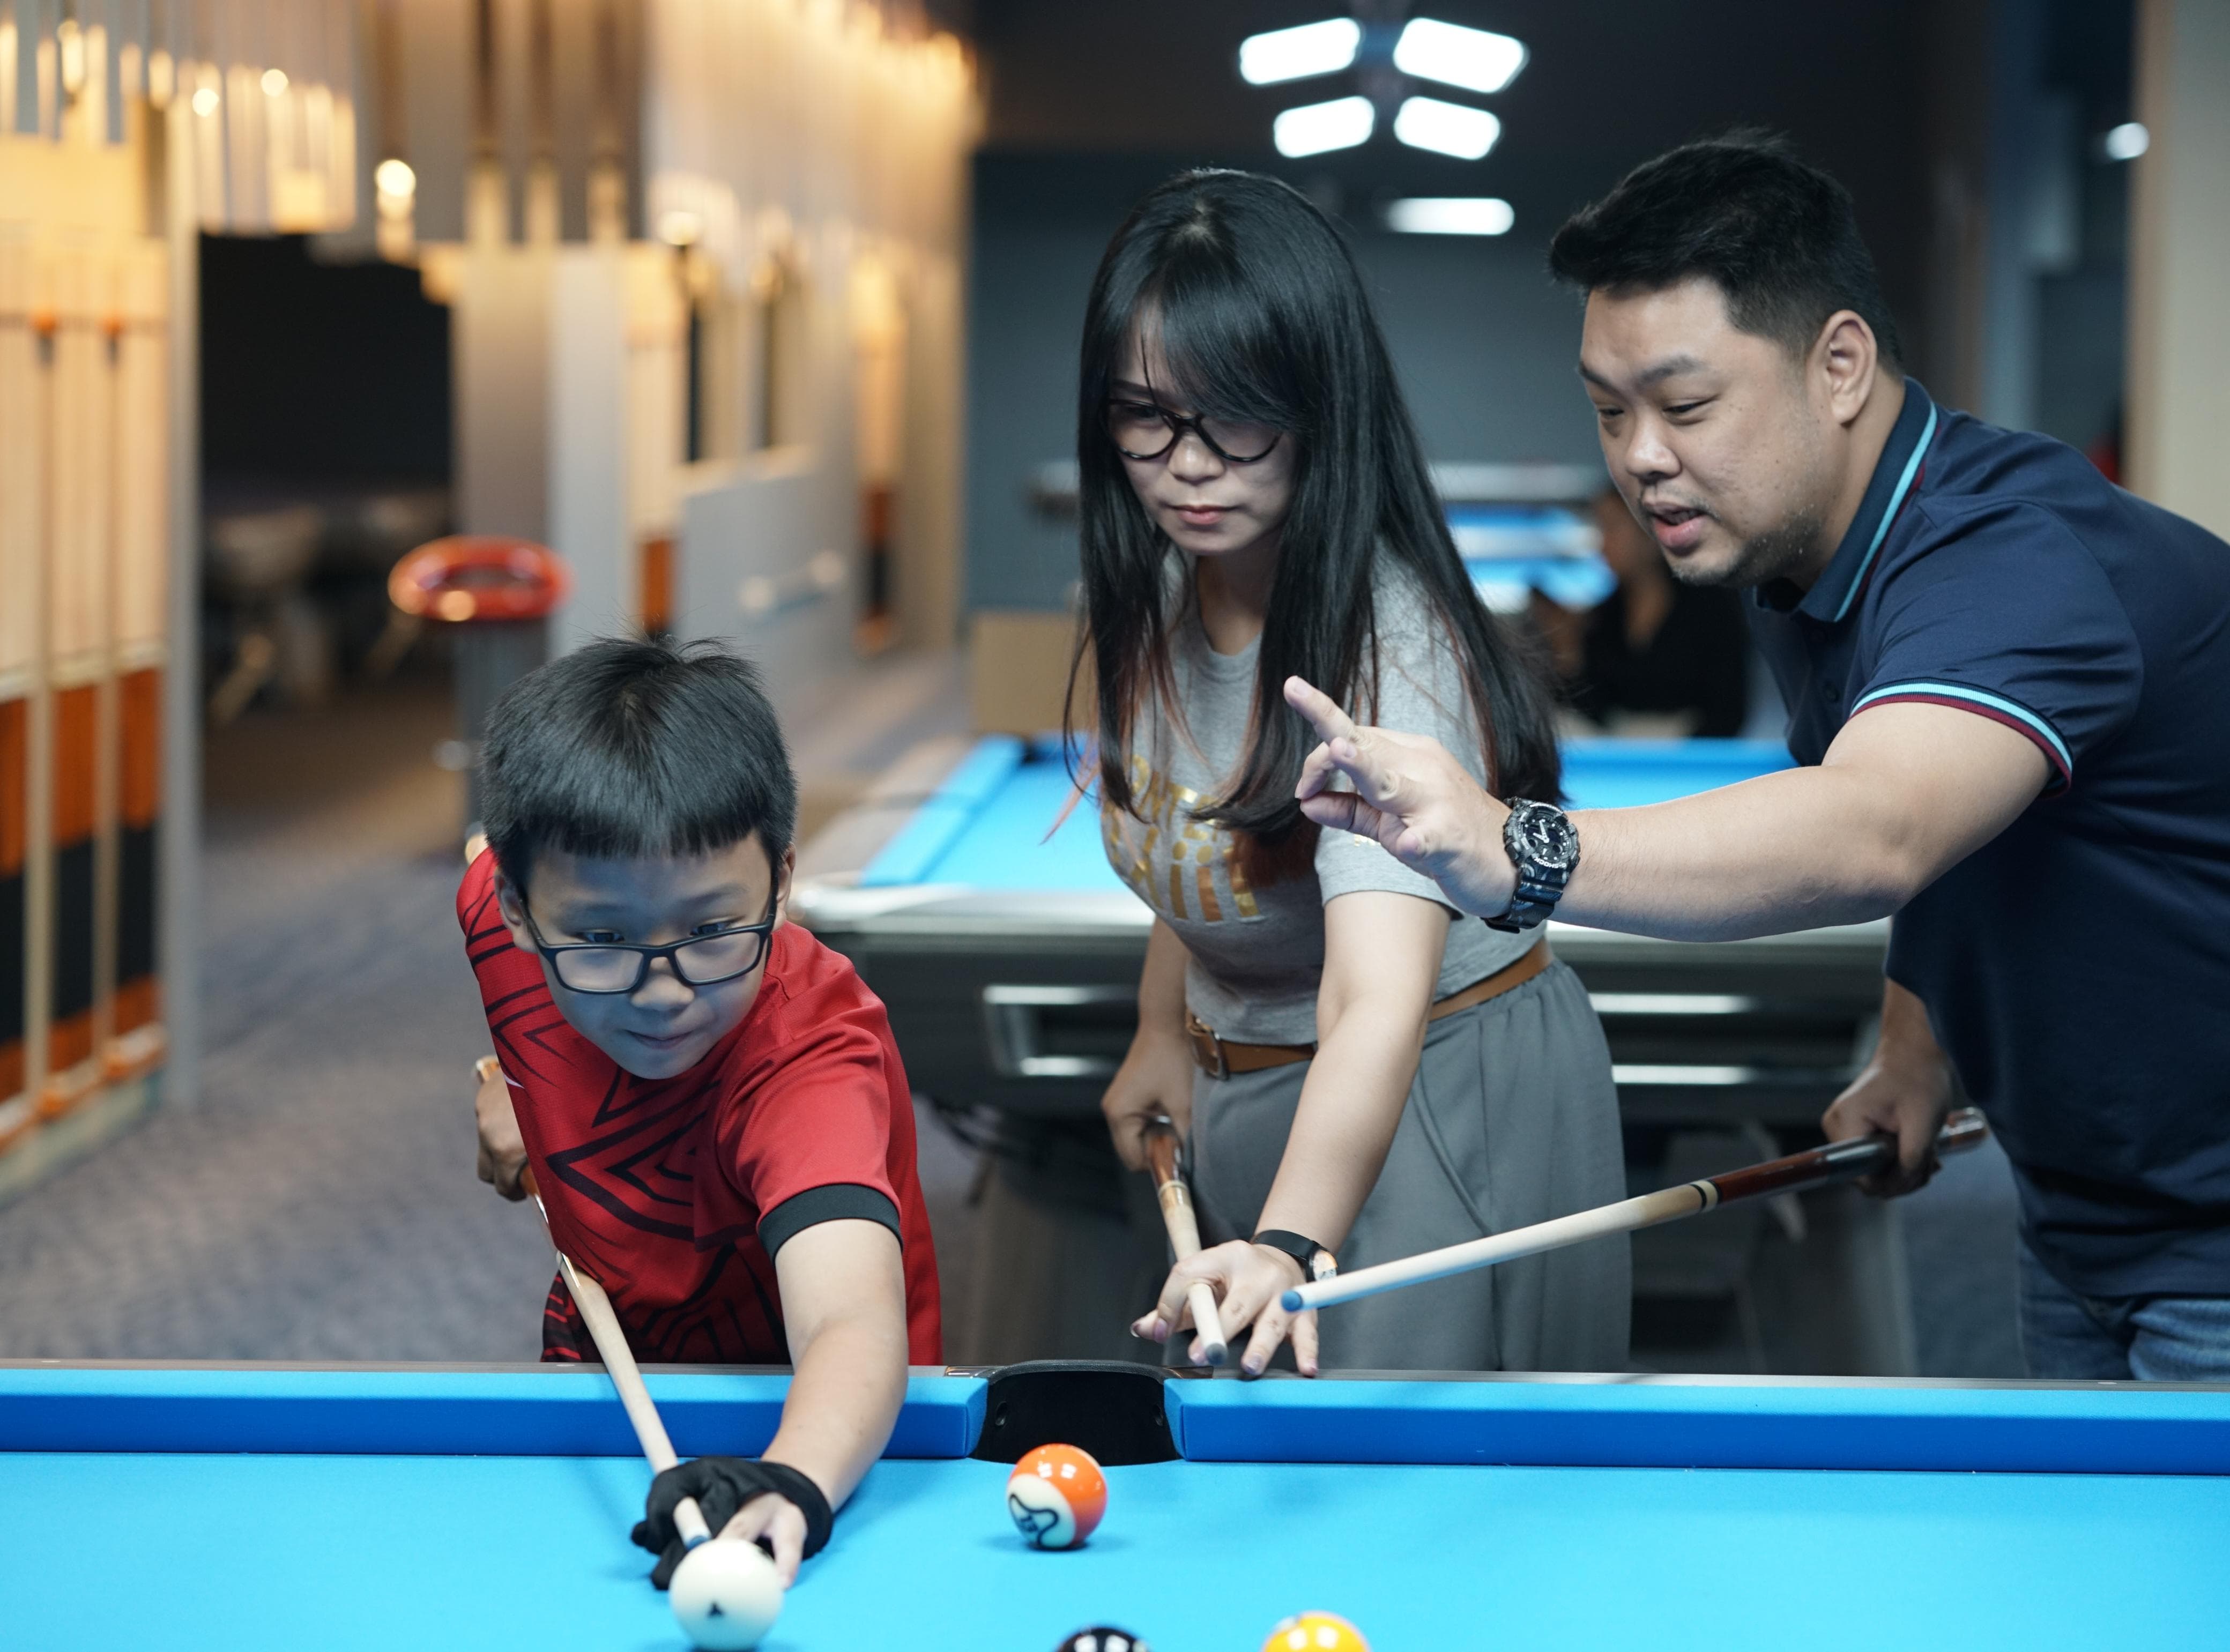 Billiards and Bites Cianjur Hadir dengan Konsep Family Friendly